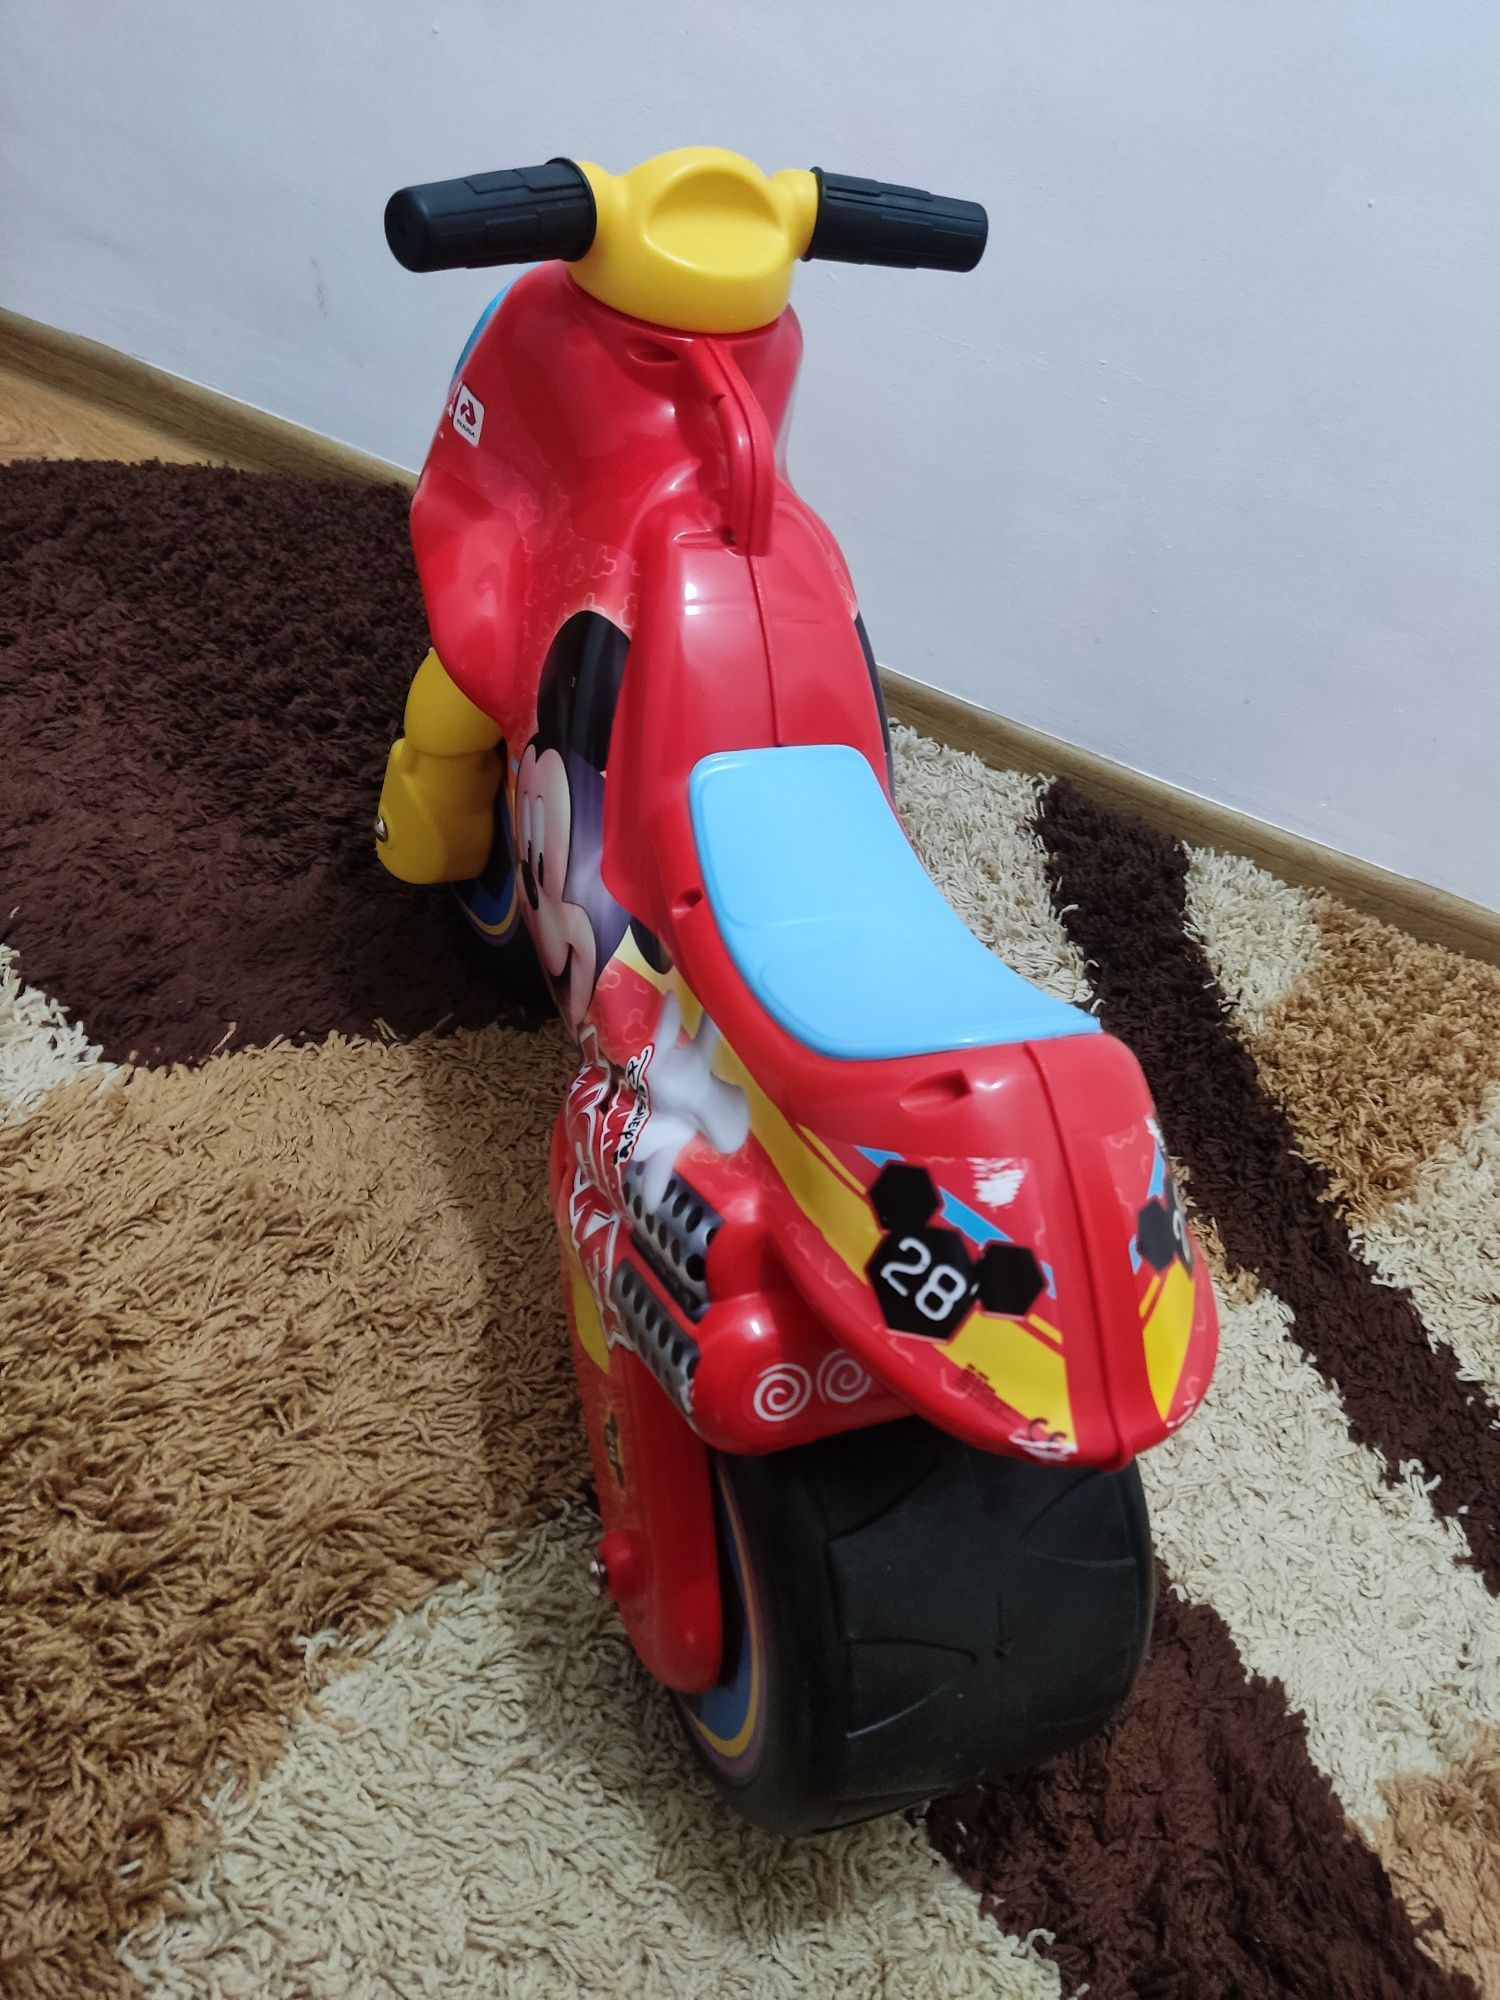 Motocicleta Ride-on Injusa Disney - Neox Mickey Mouse